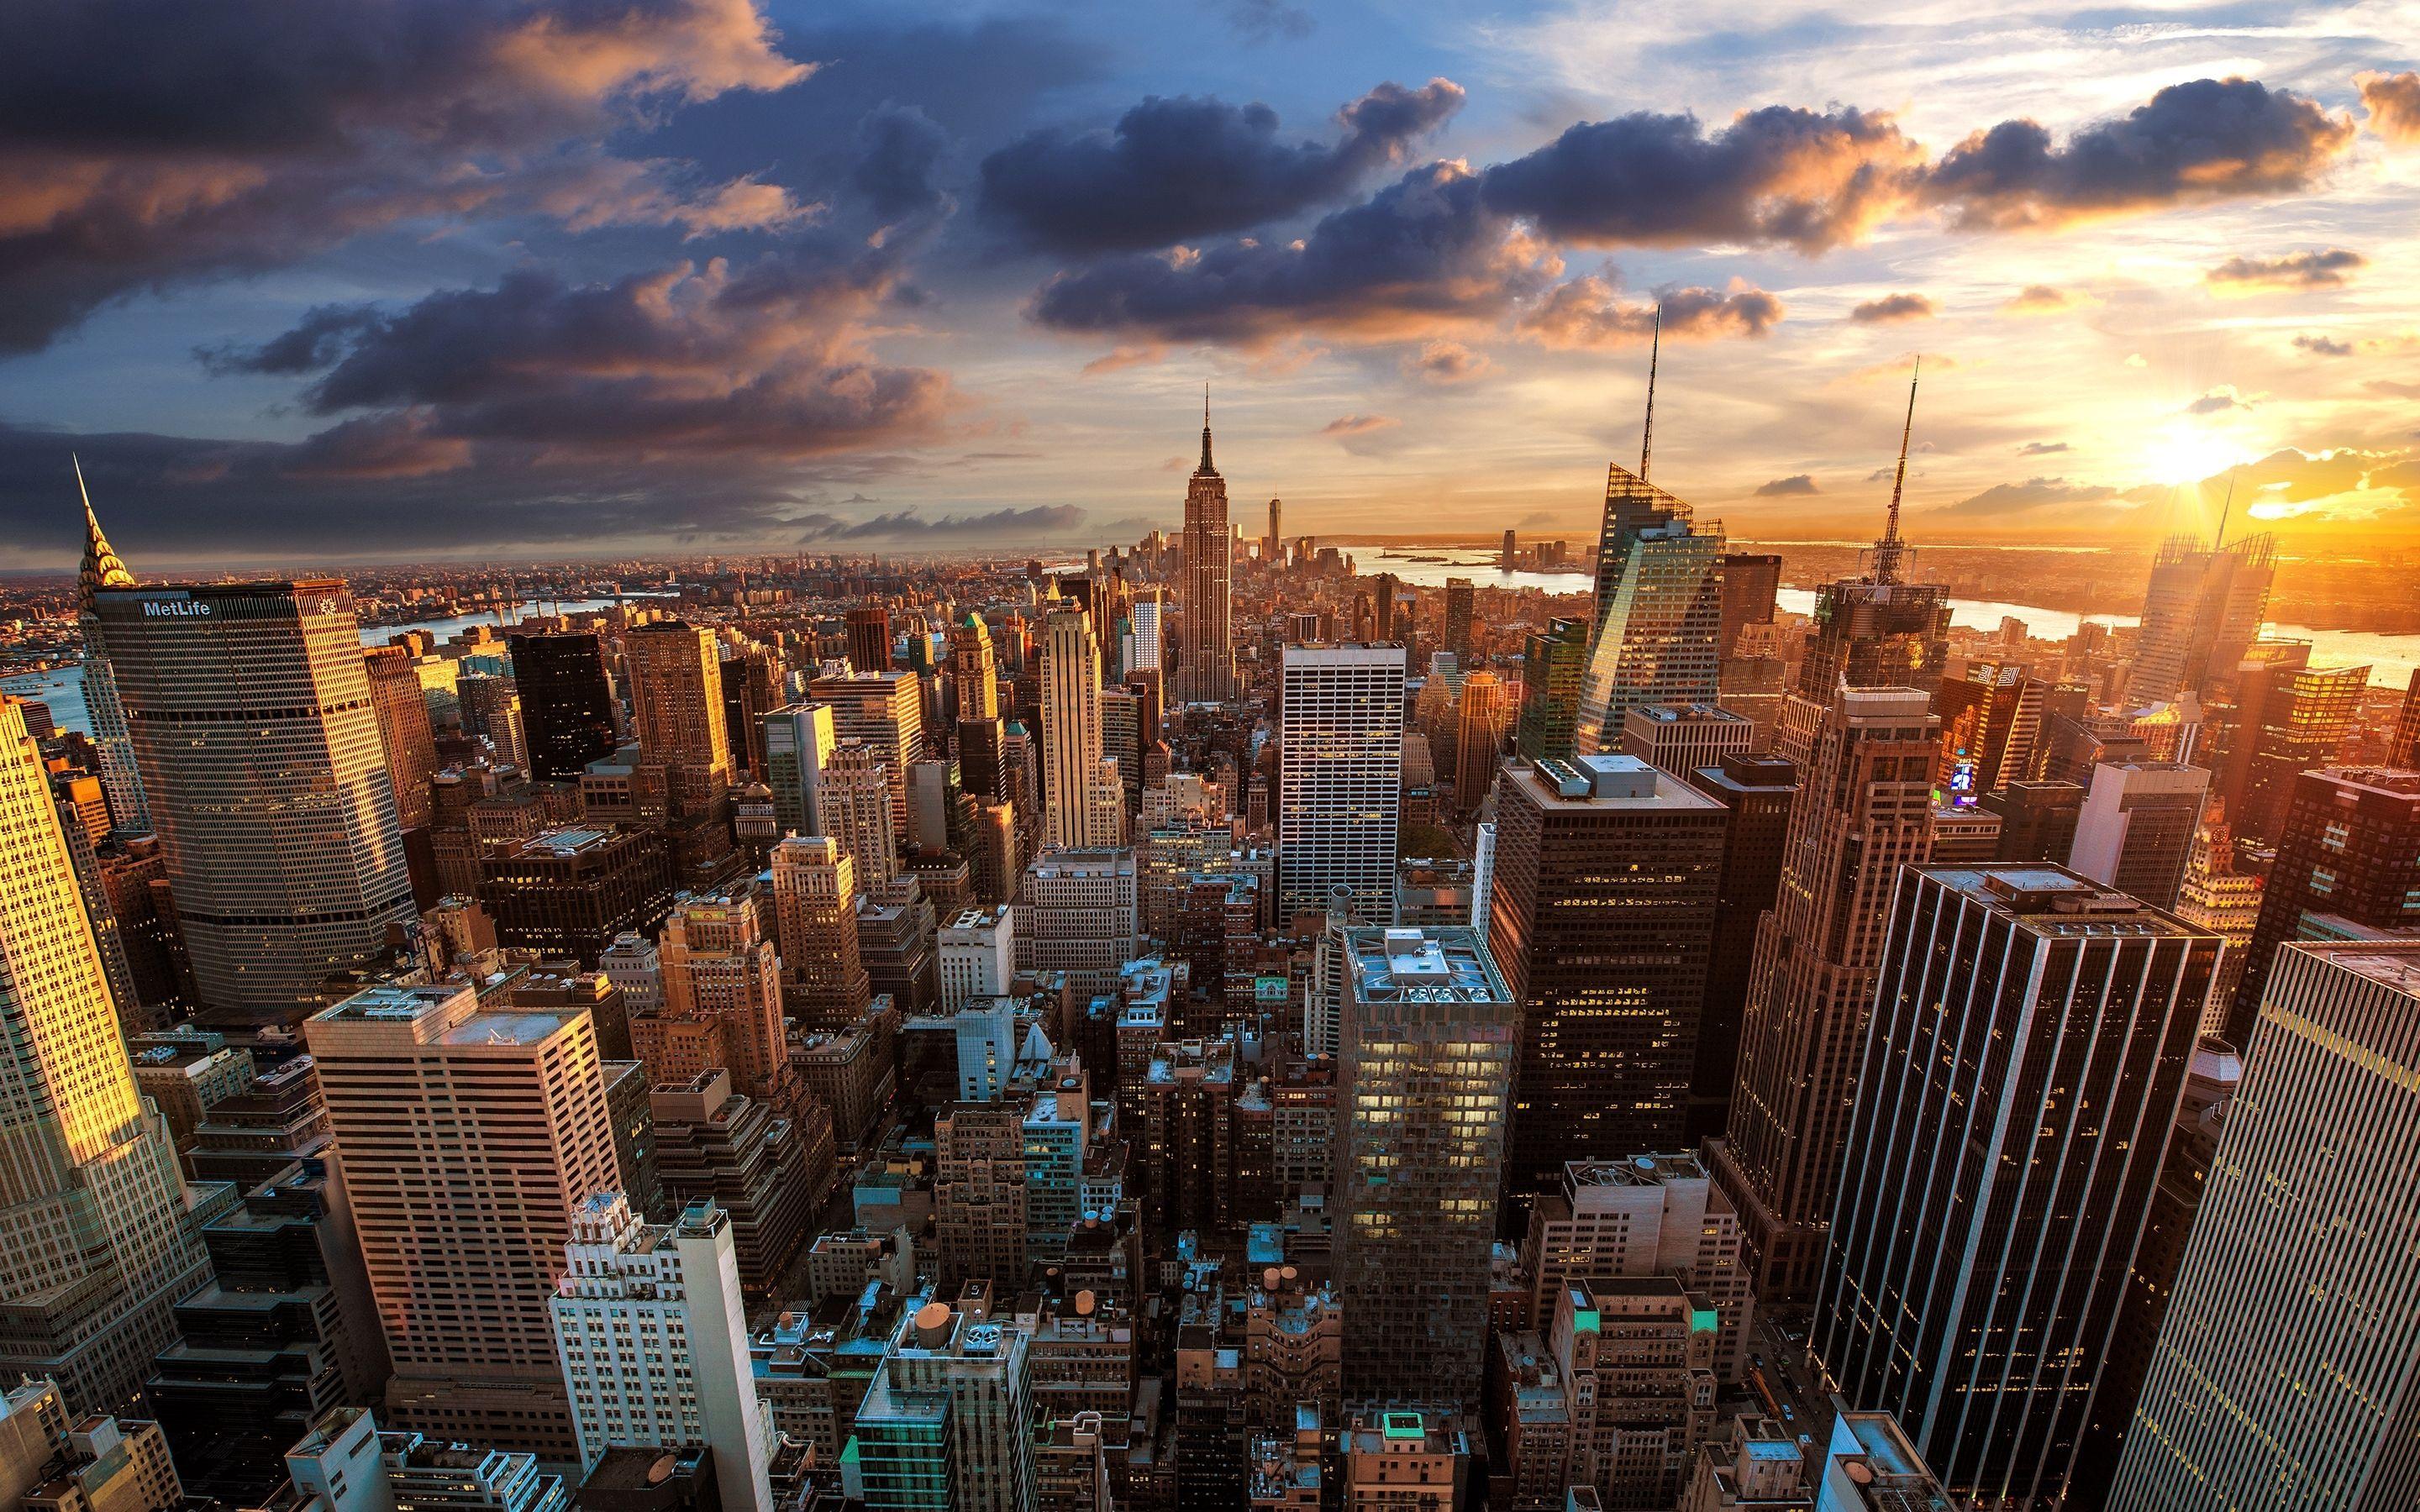 NY Desktop Wallpapers - Bạn đang muốn thay đổi khung hình nền desktop của mình? Hãy để chúng tôi giới thiệu đến bạn những bức hình nền đầy sức sống và chất lượng về thành phố New York này. Tận hưởng không khí sôi động mà bộ sưu tập của chúng tôi mang lại!